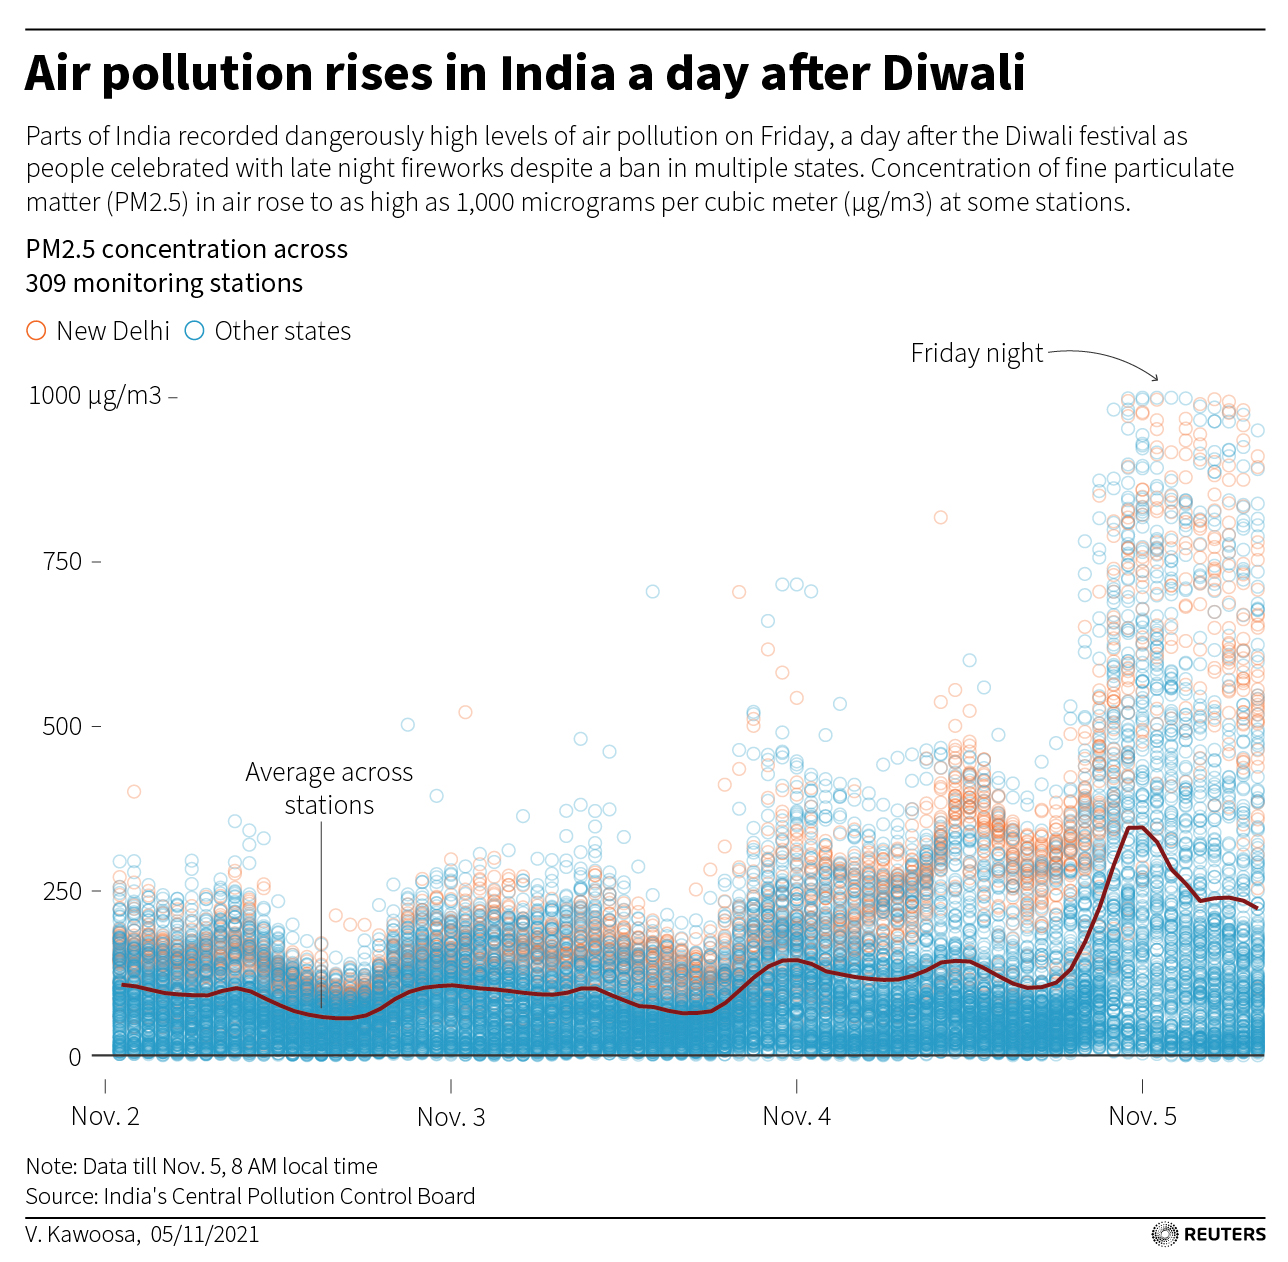 A pesar de estar prohibido en muchos estados, se reportaron niveles peligrosos de contaminación del aire en algunas partes de la India el viernes, un día después del festival Deepavali, mientras la gente celebraba con fuegos artificiales por la noche.